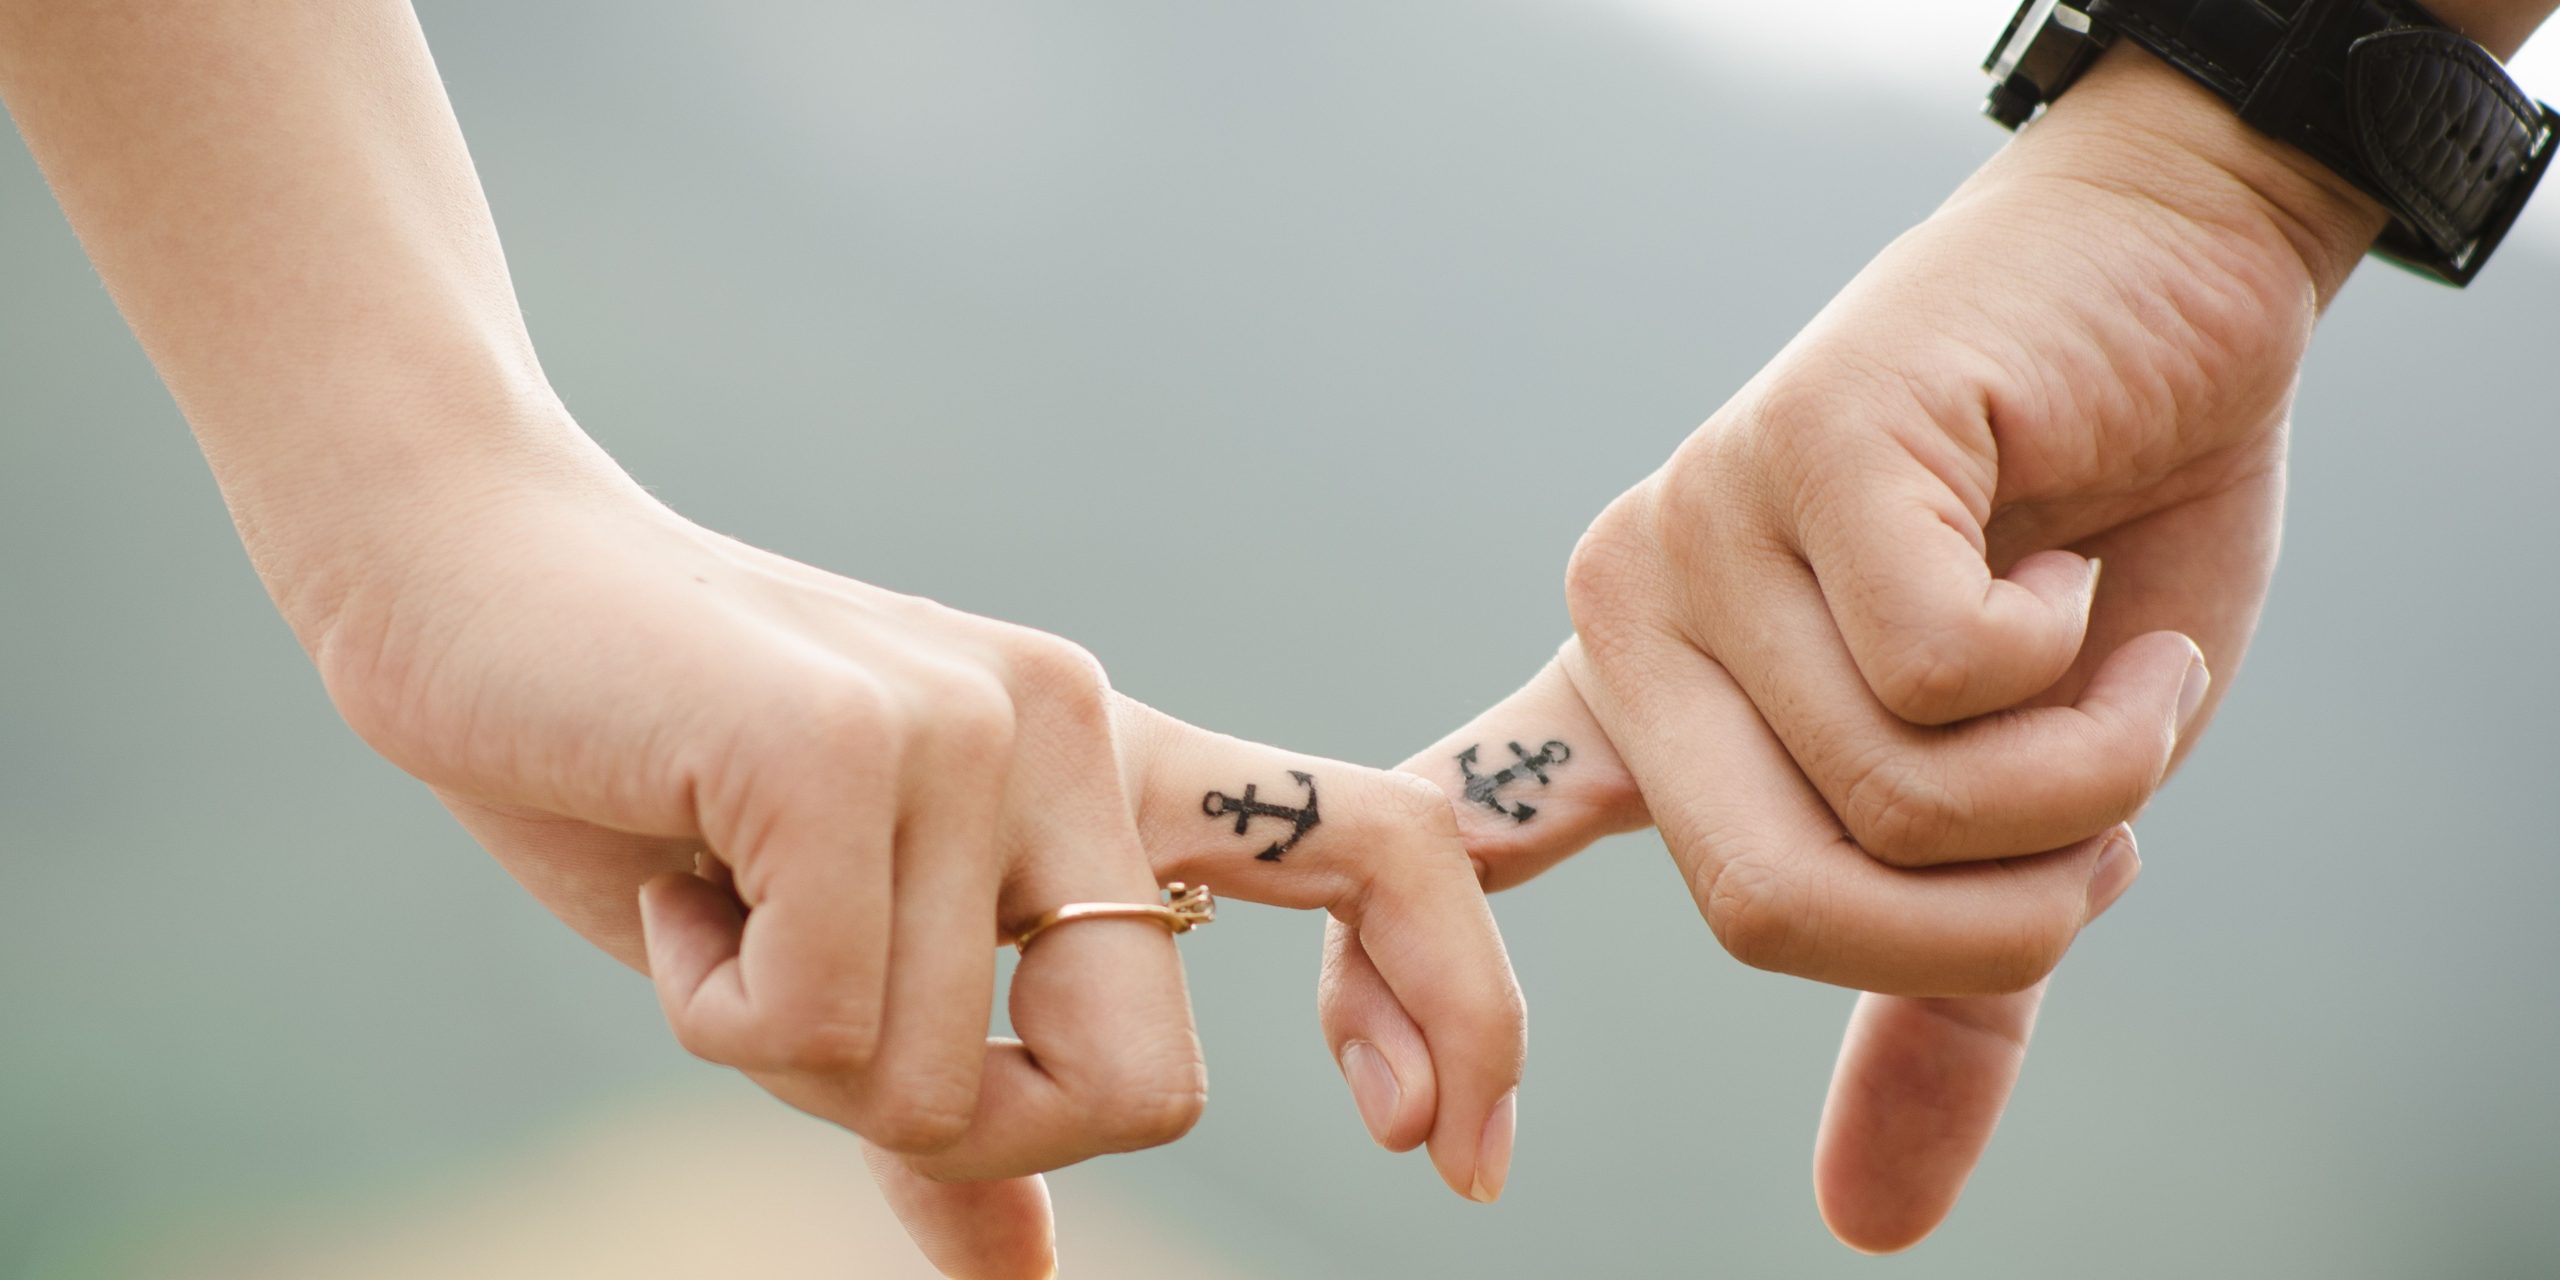 Are Finger Tattoos A Bad Idea